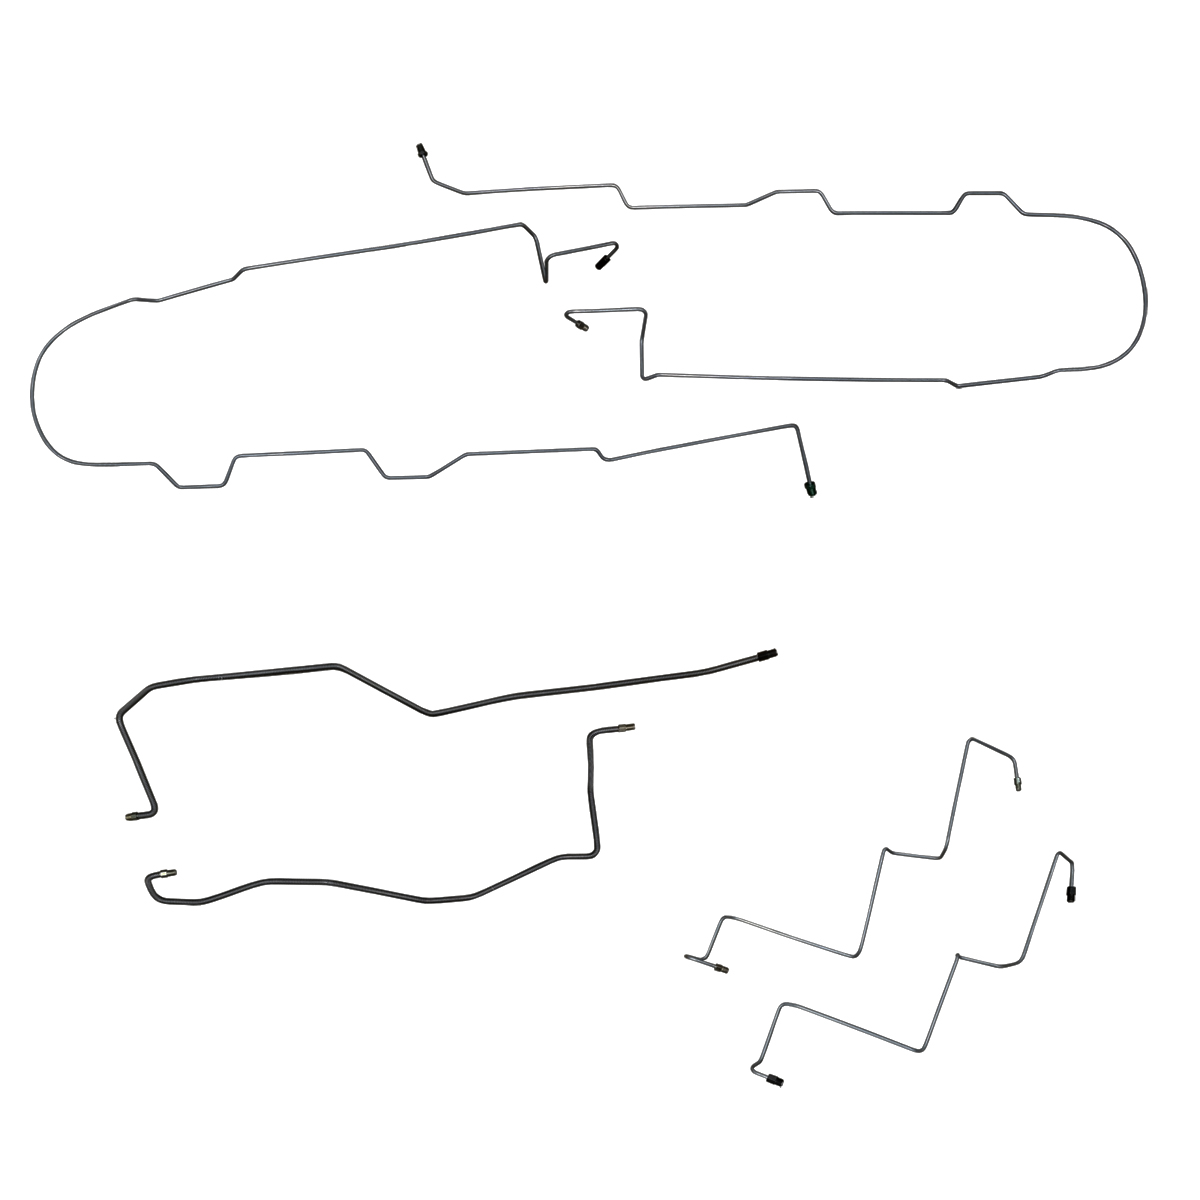 Plymouth Brake Diagram - Wiring Diagram